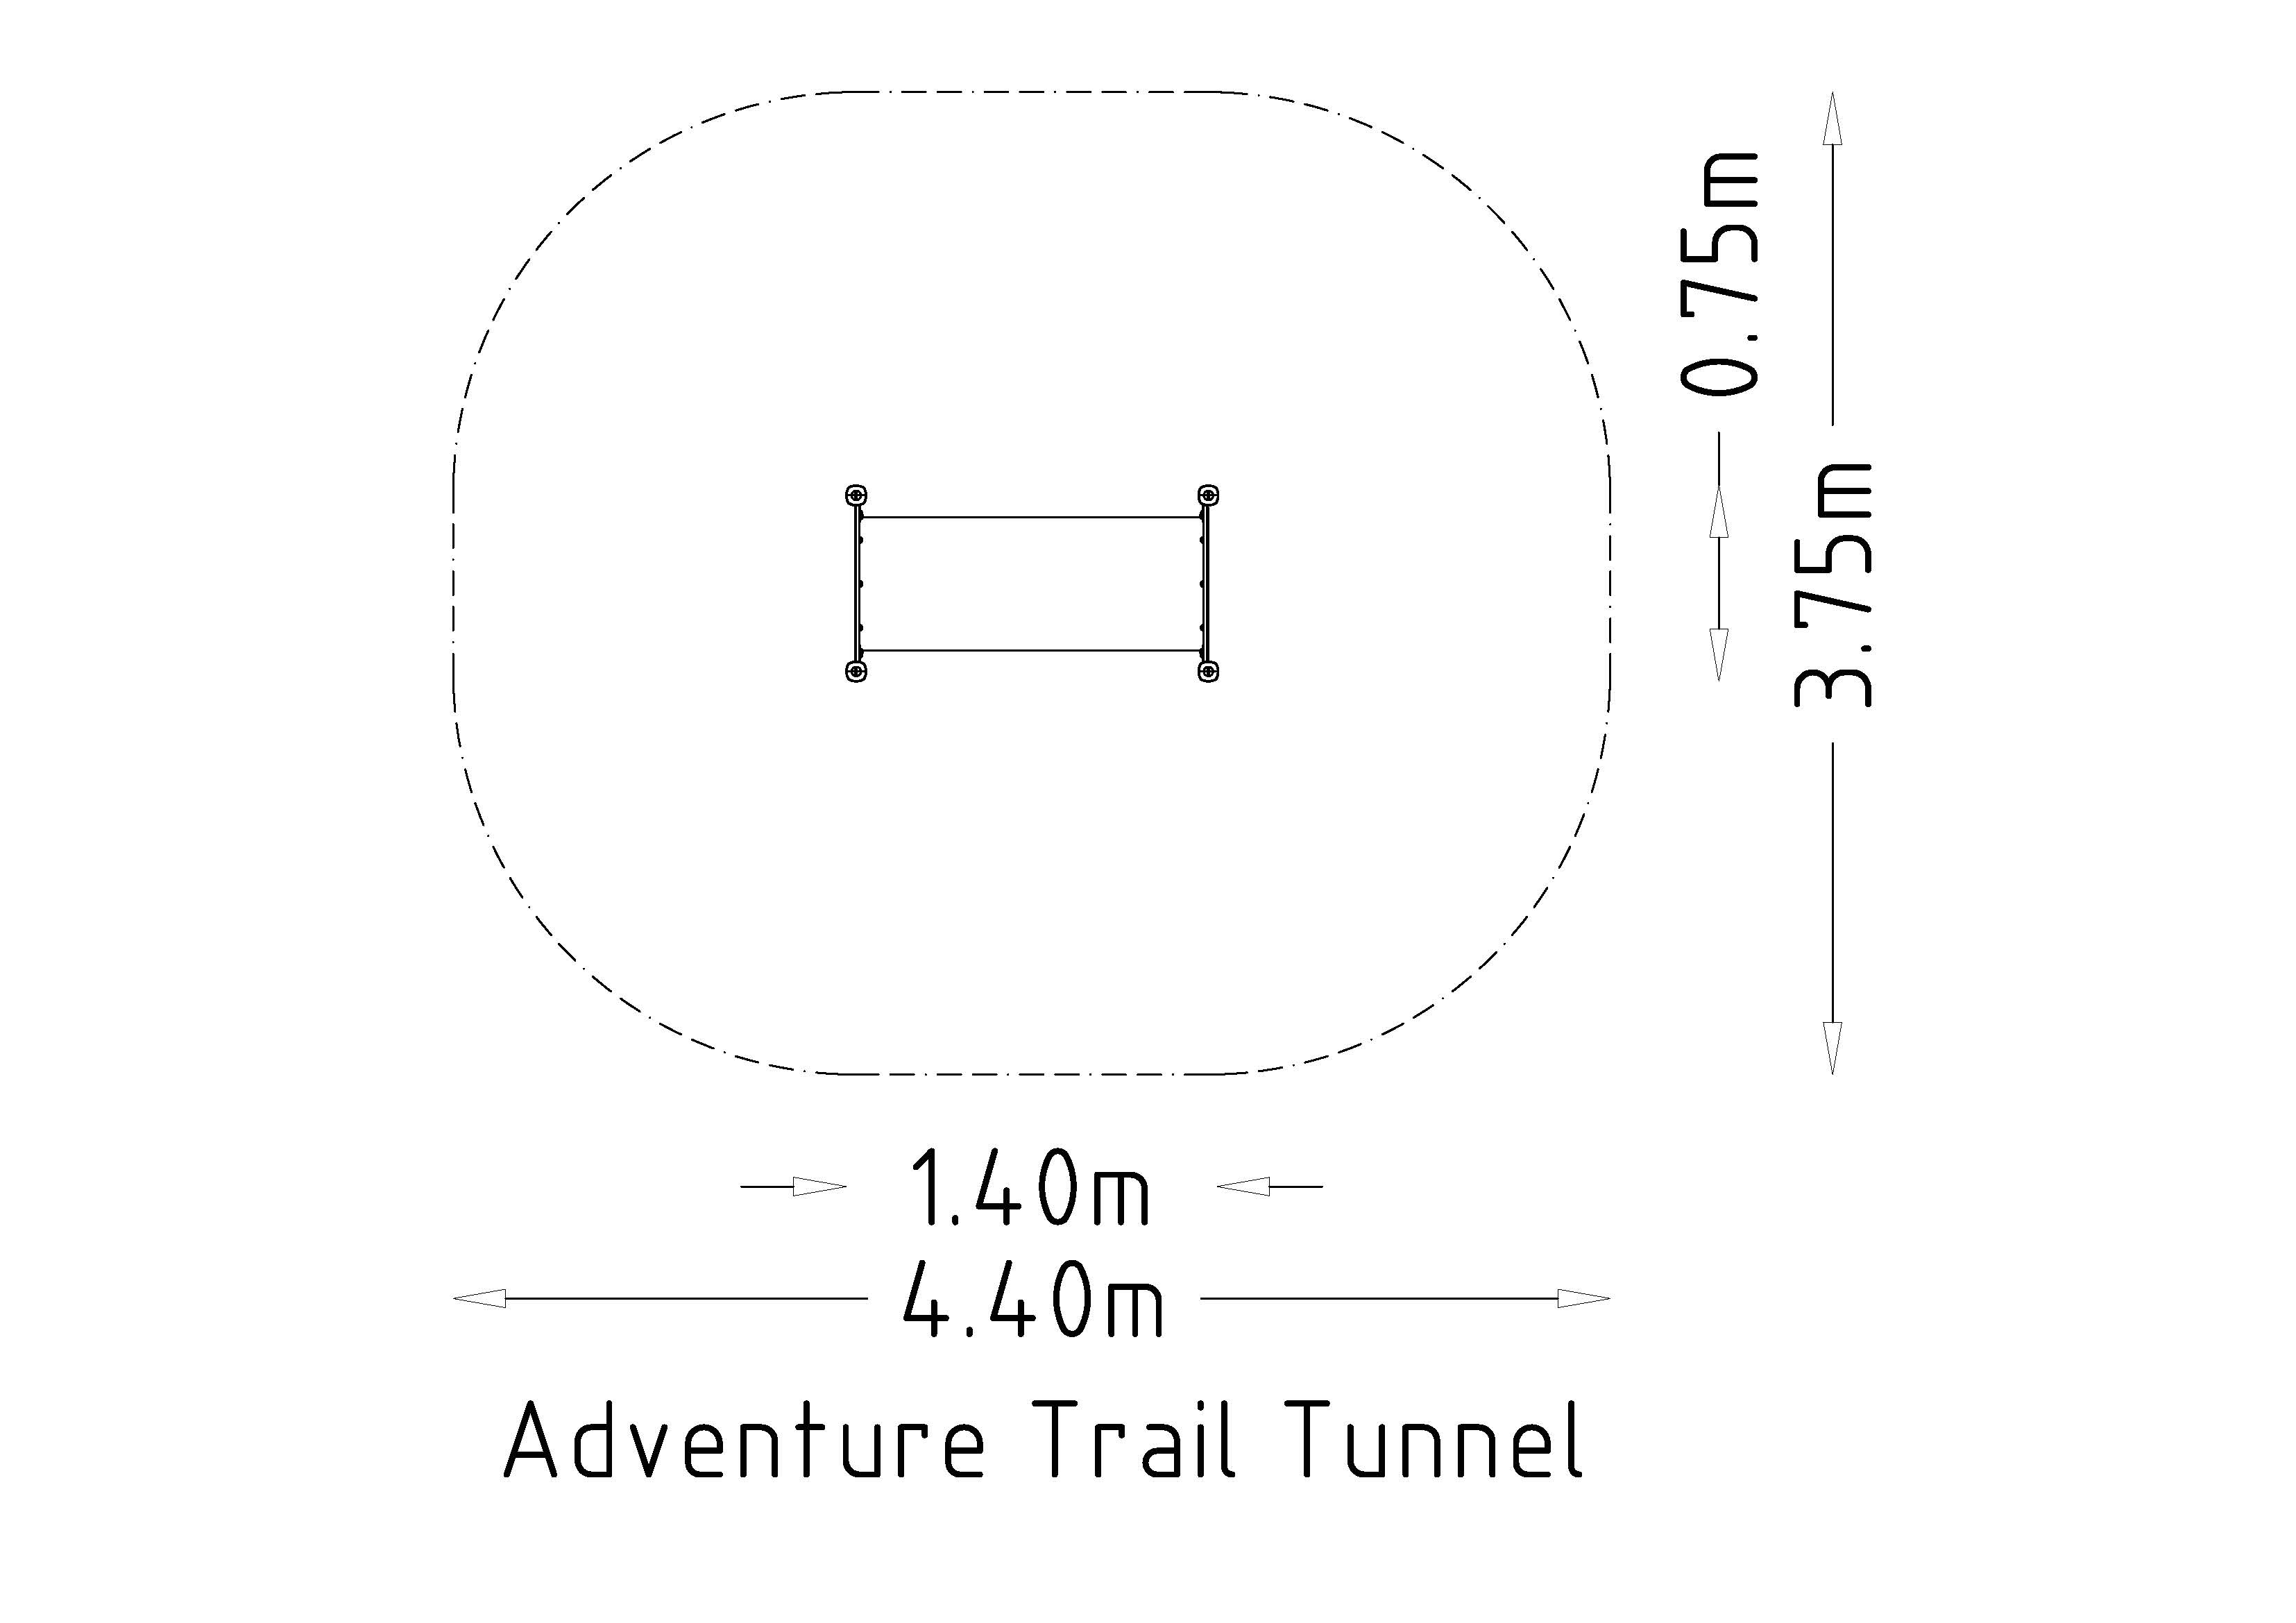 UniMini Adventure Trail Tunnel